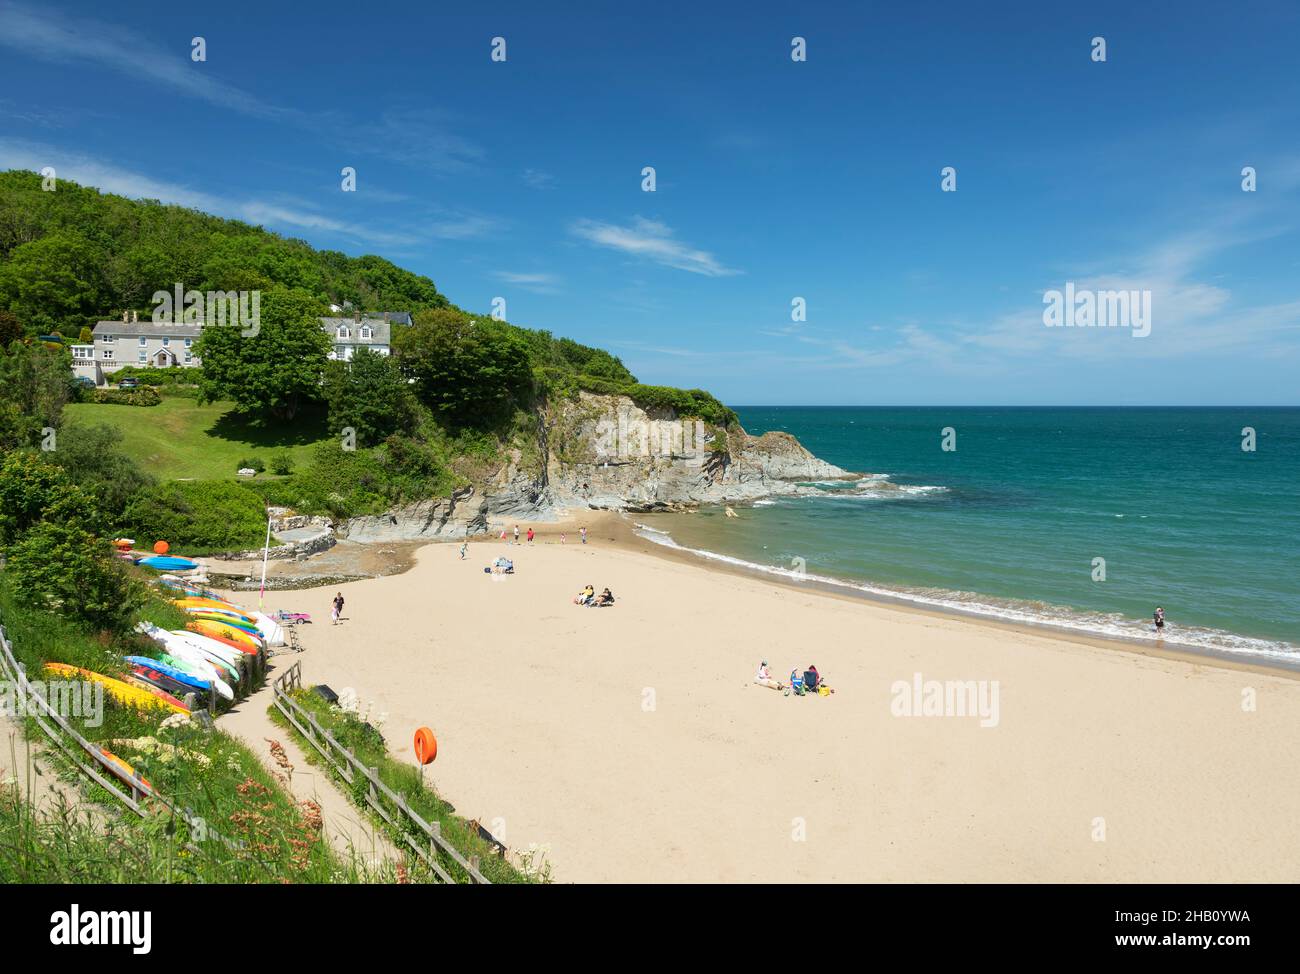 Dolwen Beach, Aberporth, Cardigan Bay, Ceredigion, Wales, UK, Europe Stock Photo